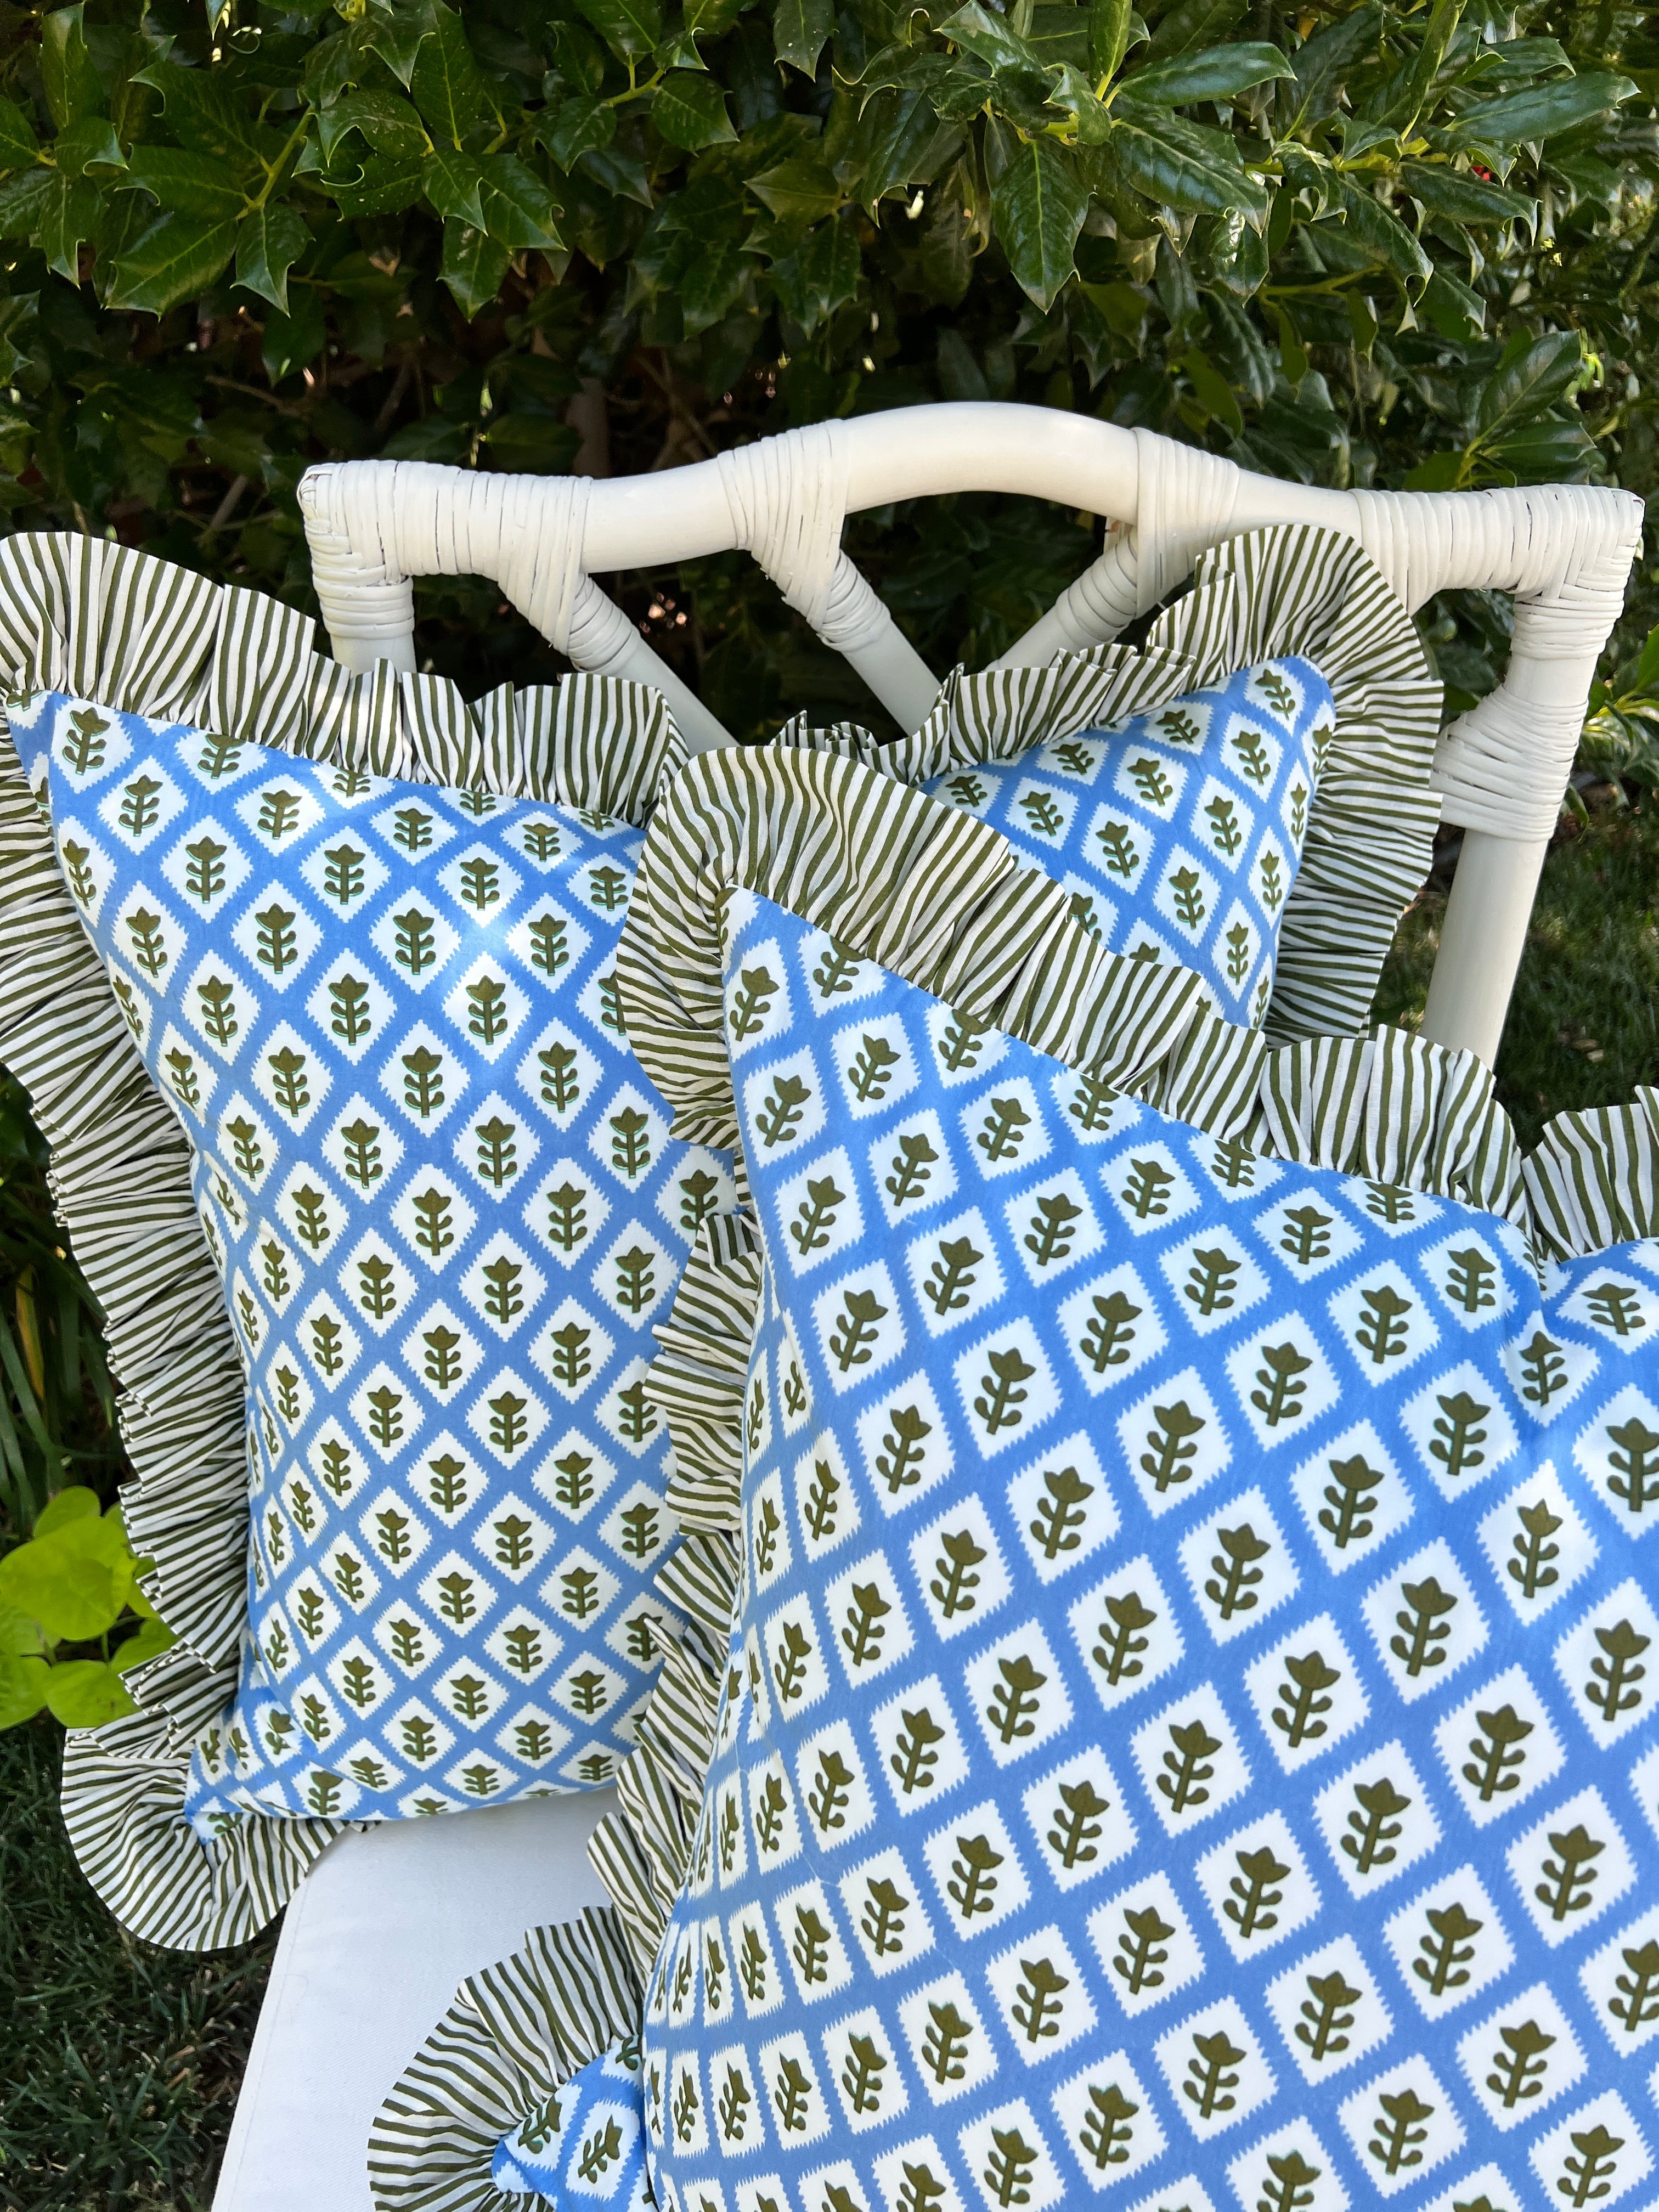 Blue Outdoor Throw Pillow Insert Included Light Blue Pillow 